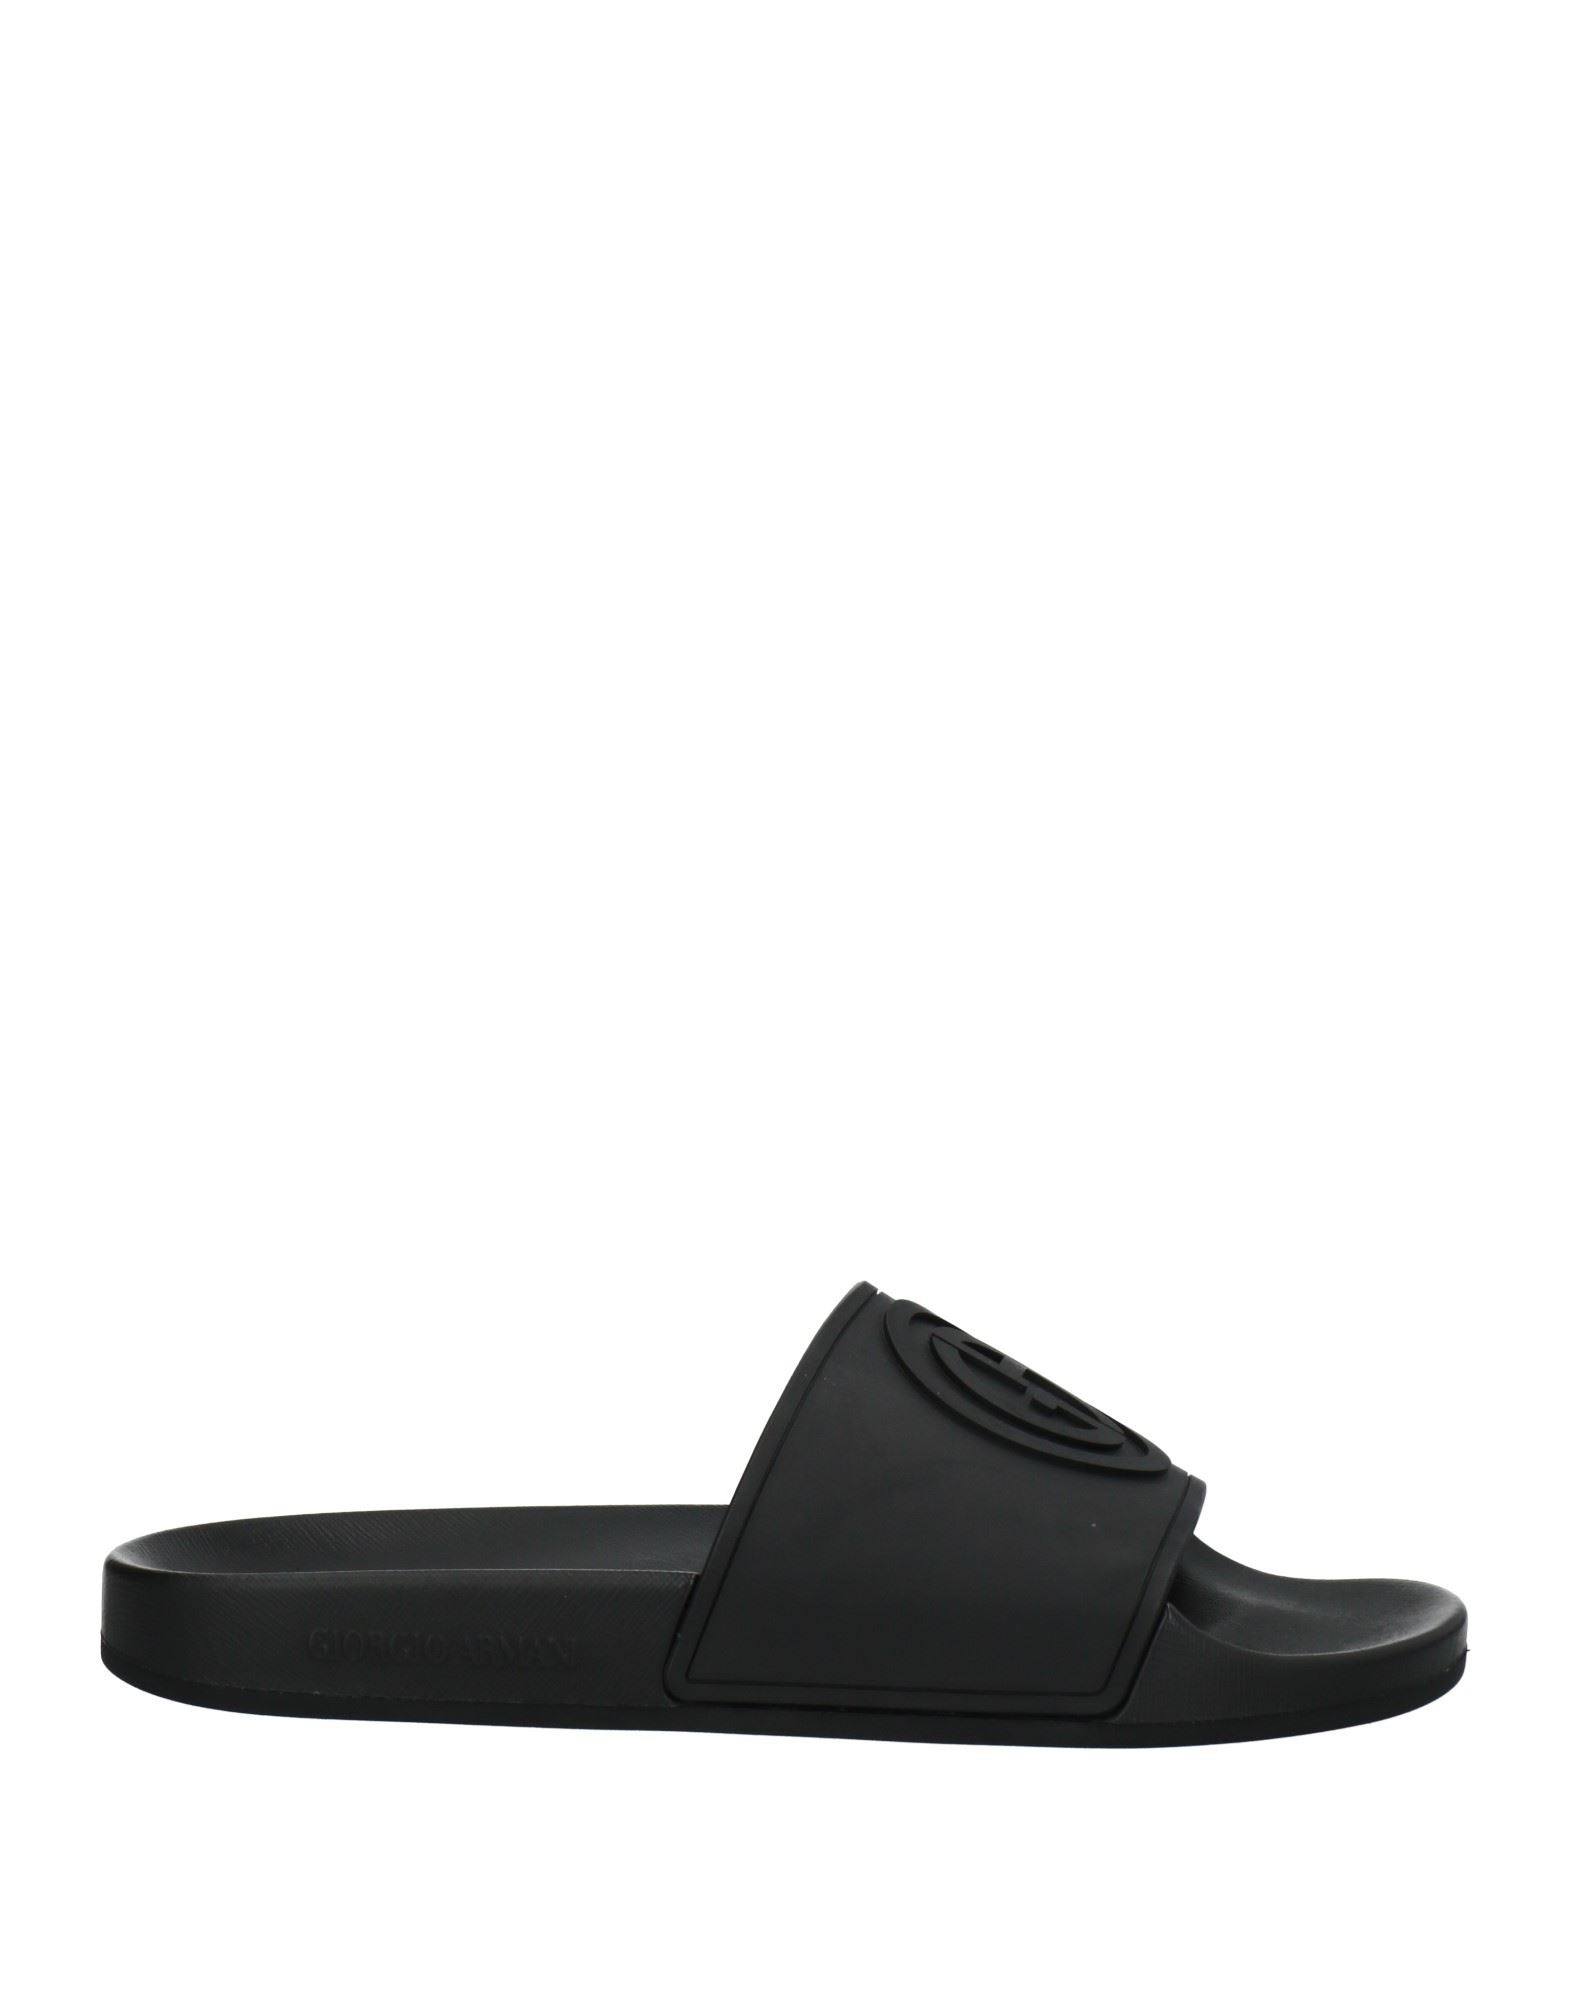 Giorgio Armani Man Sandals Black Size 9 Rubber